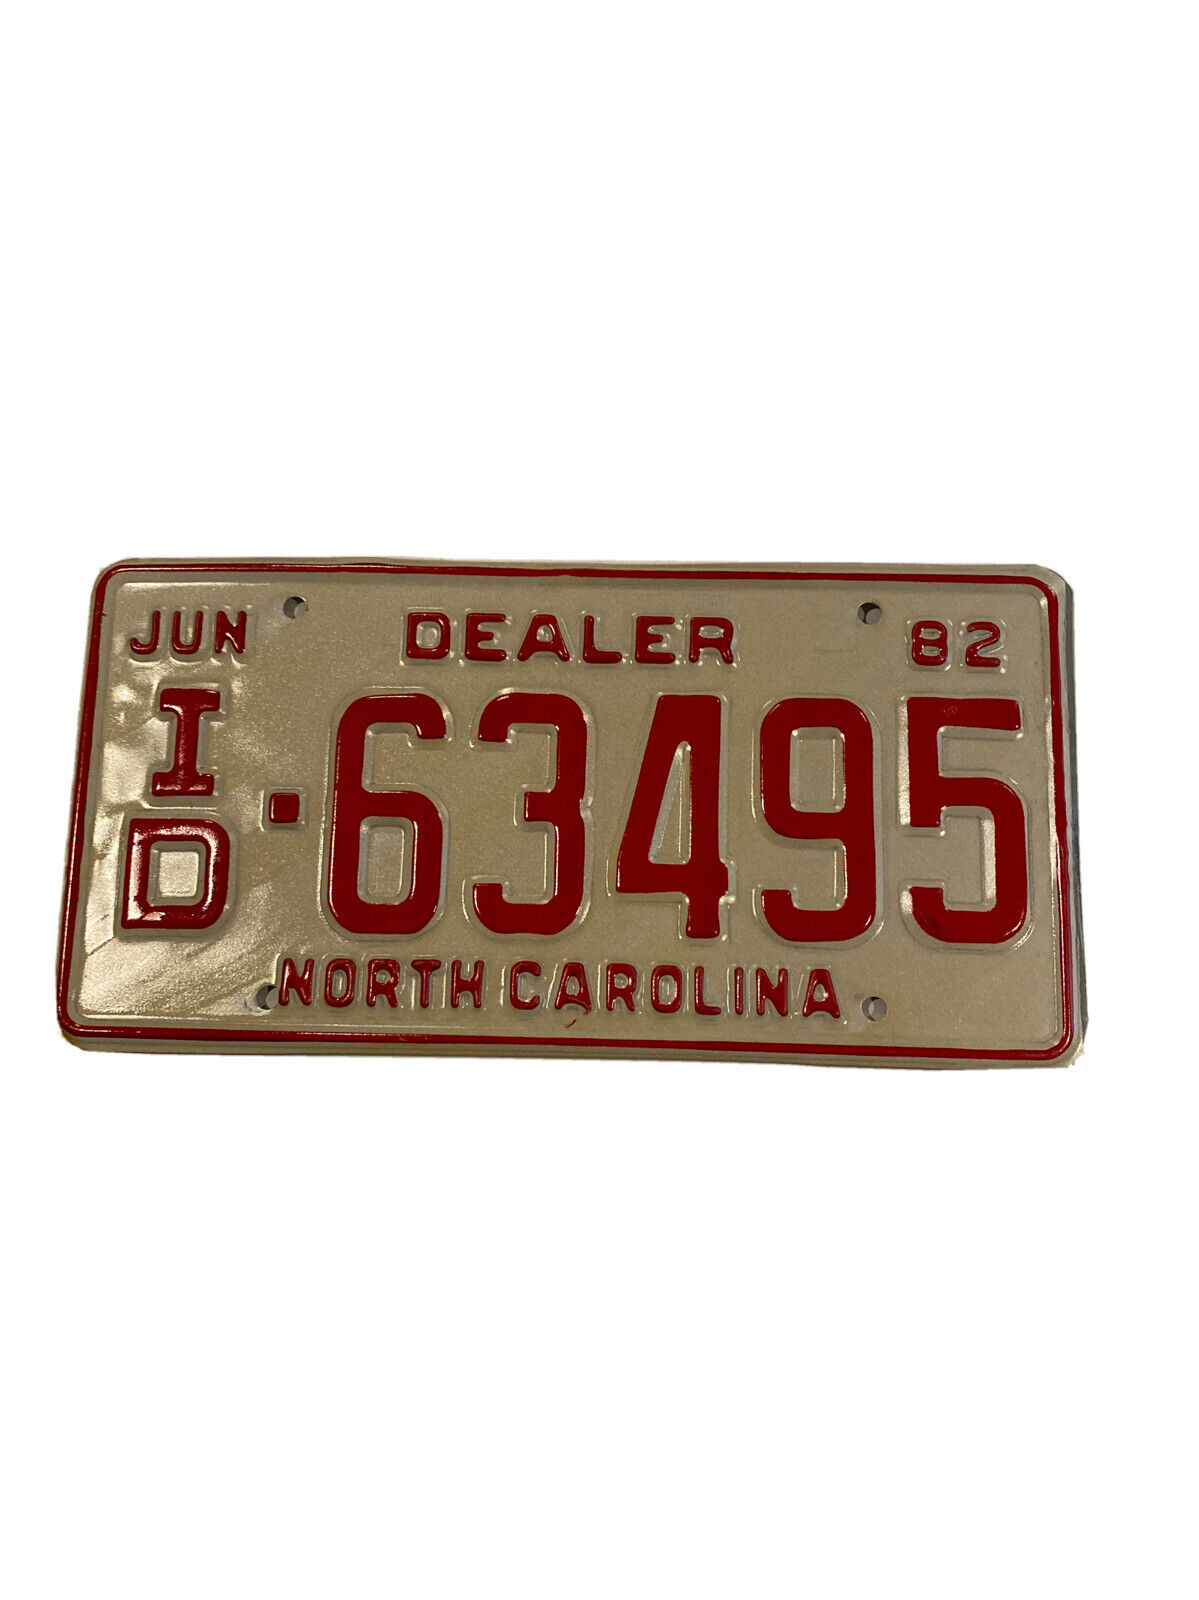 Vintage 1982 north carolina dealer tag license plate 63495